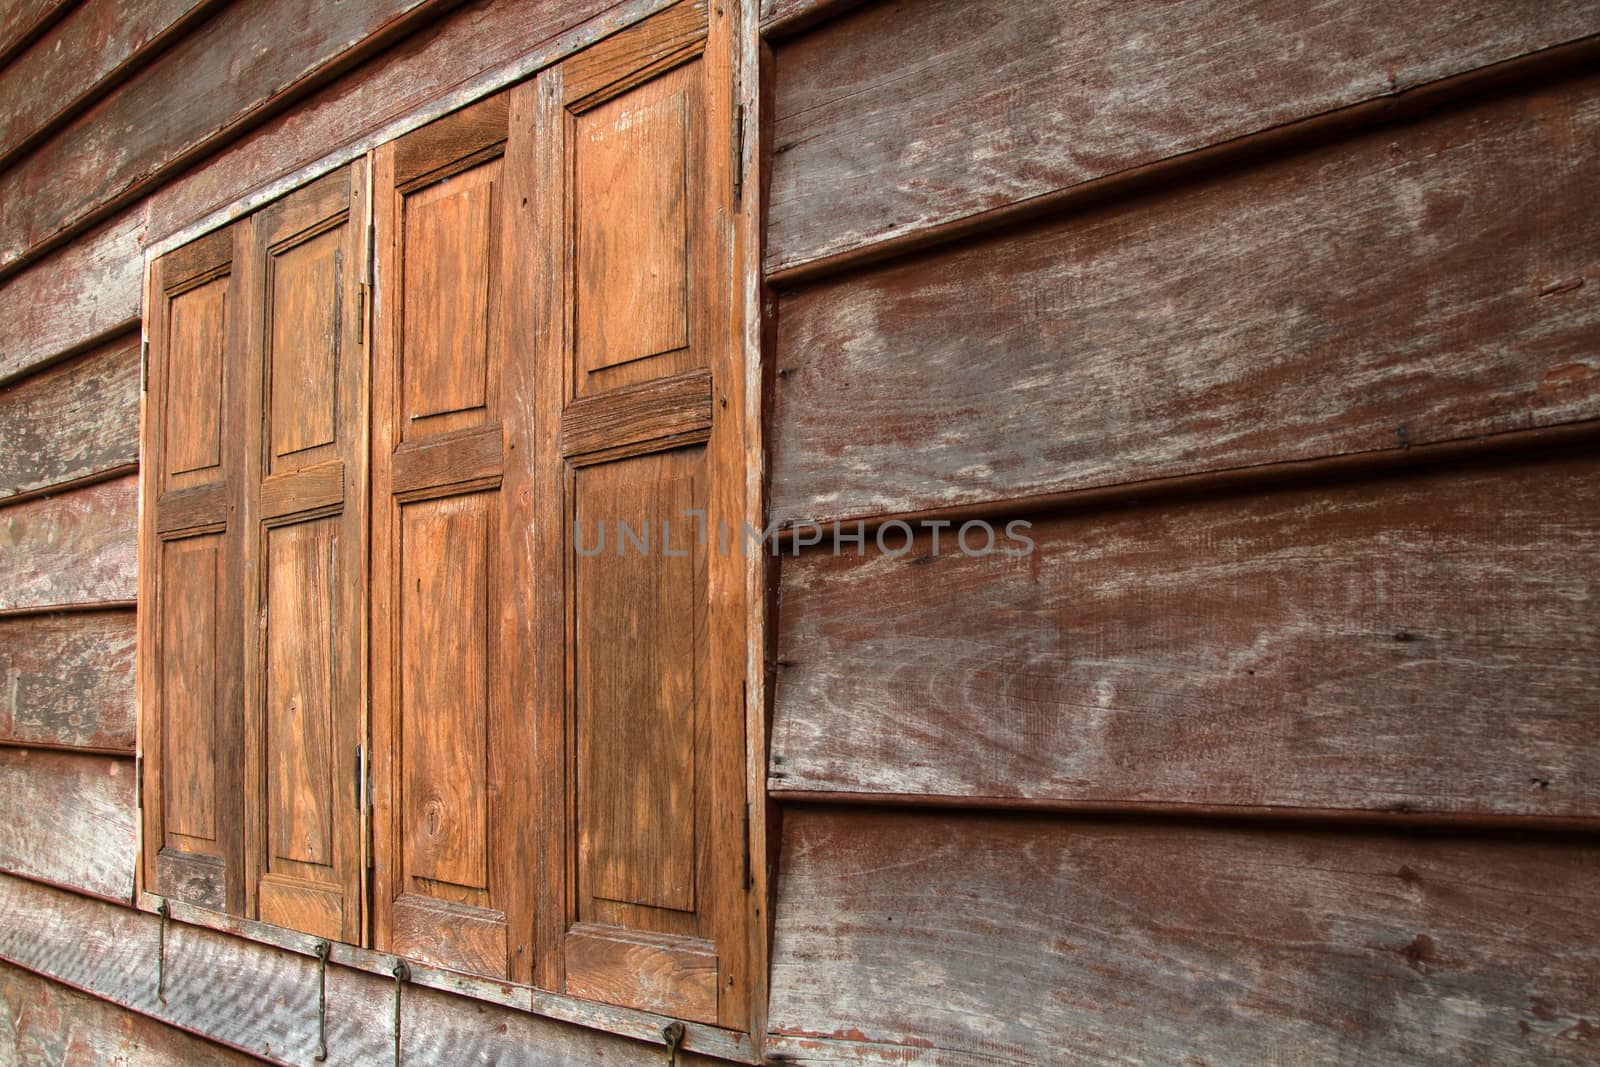 Old wooden door in Thailand design style